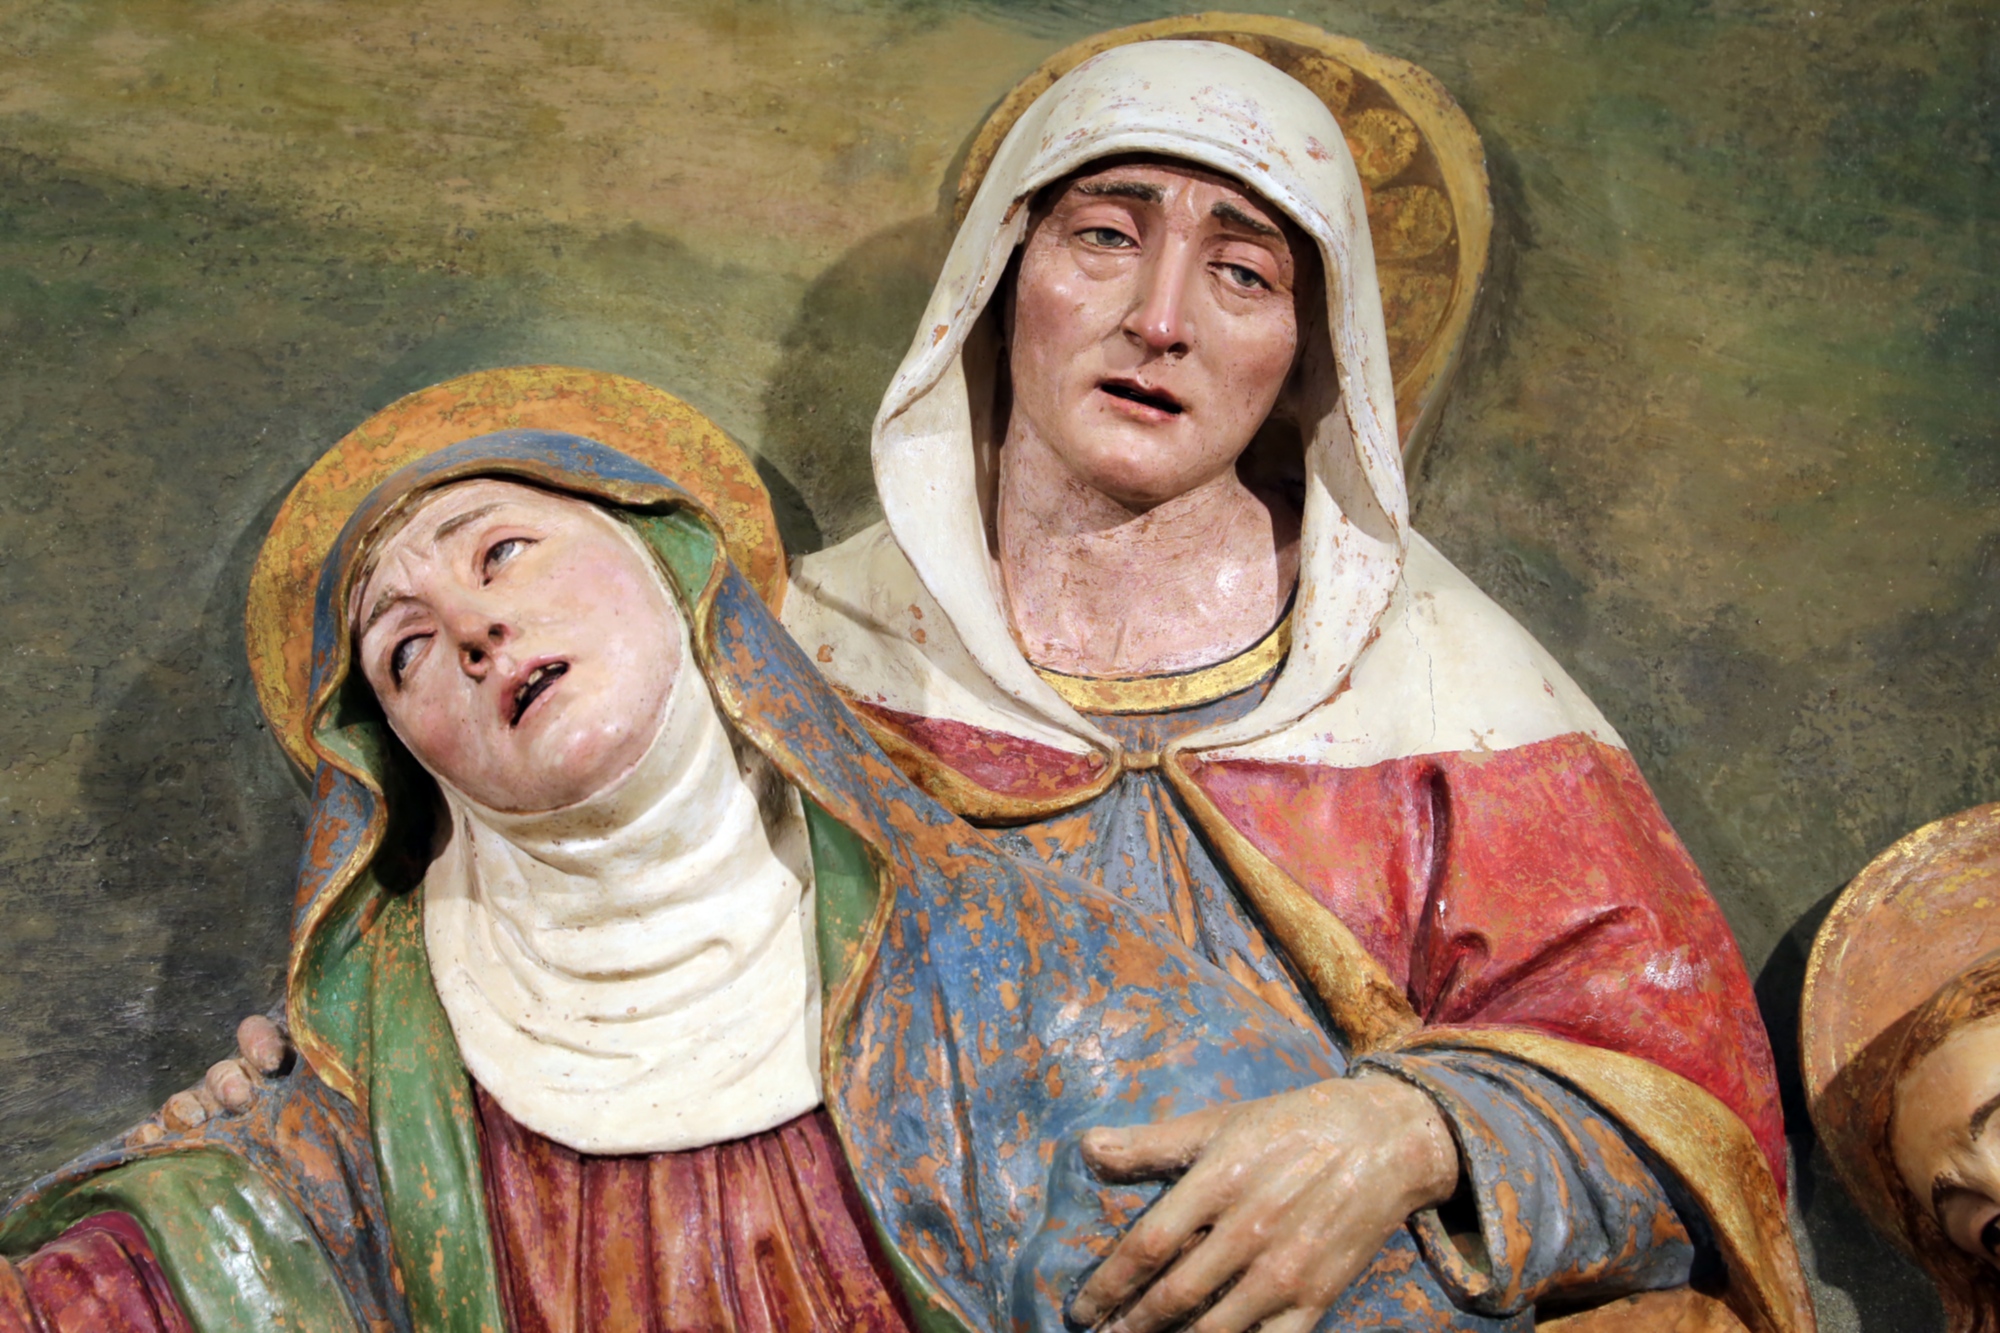 Musée d'Art Sacré de Saint François à Greve in Chianti